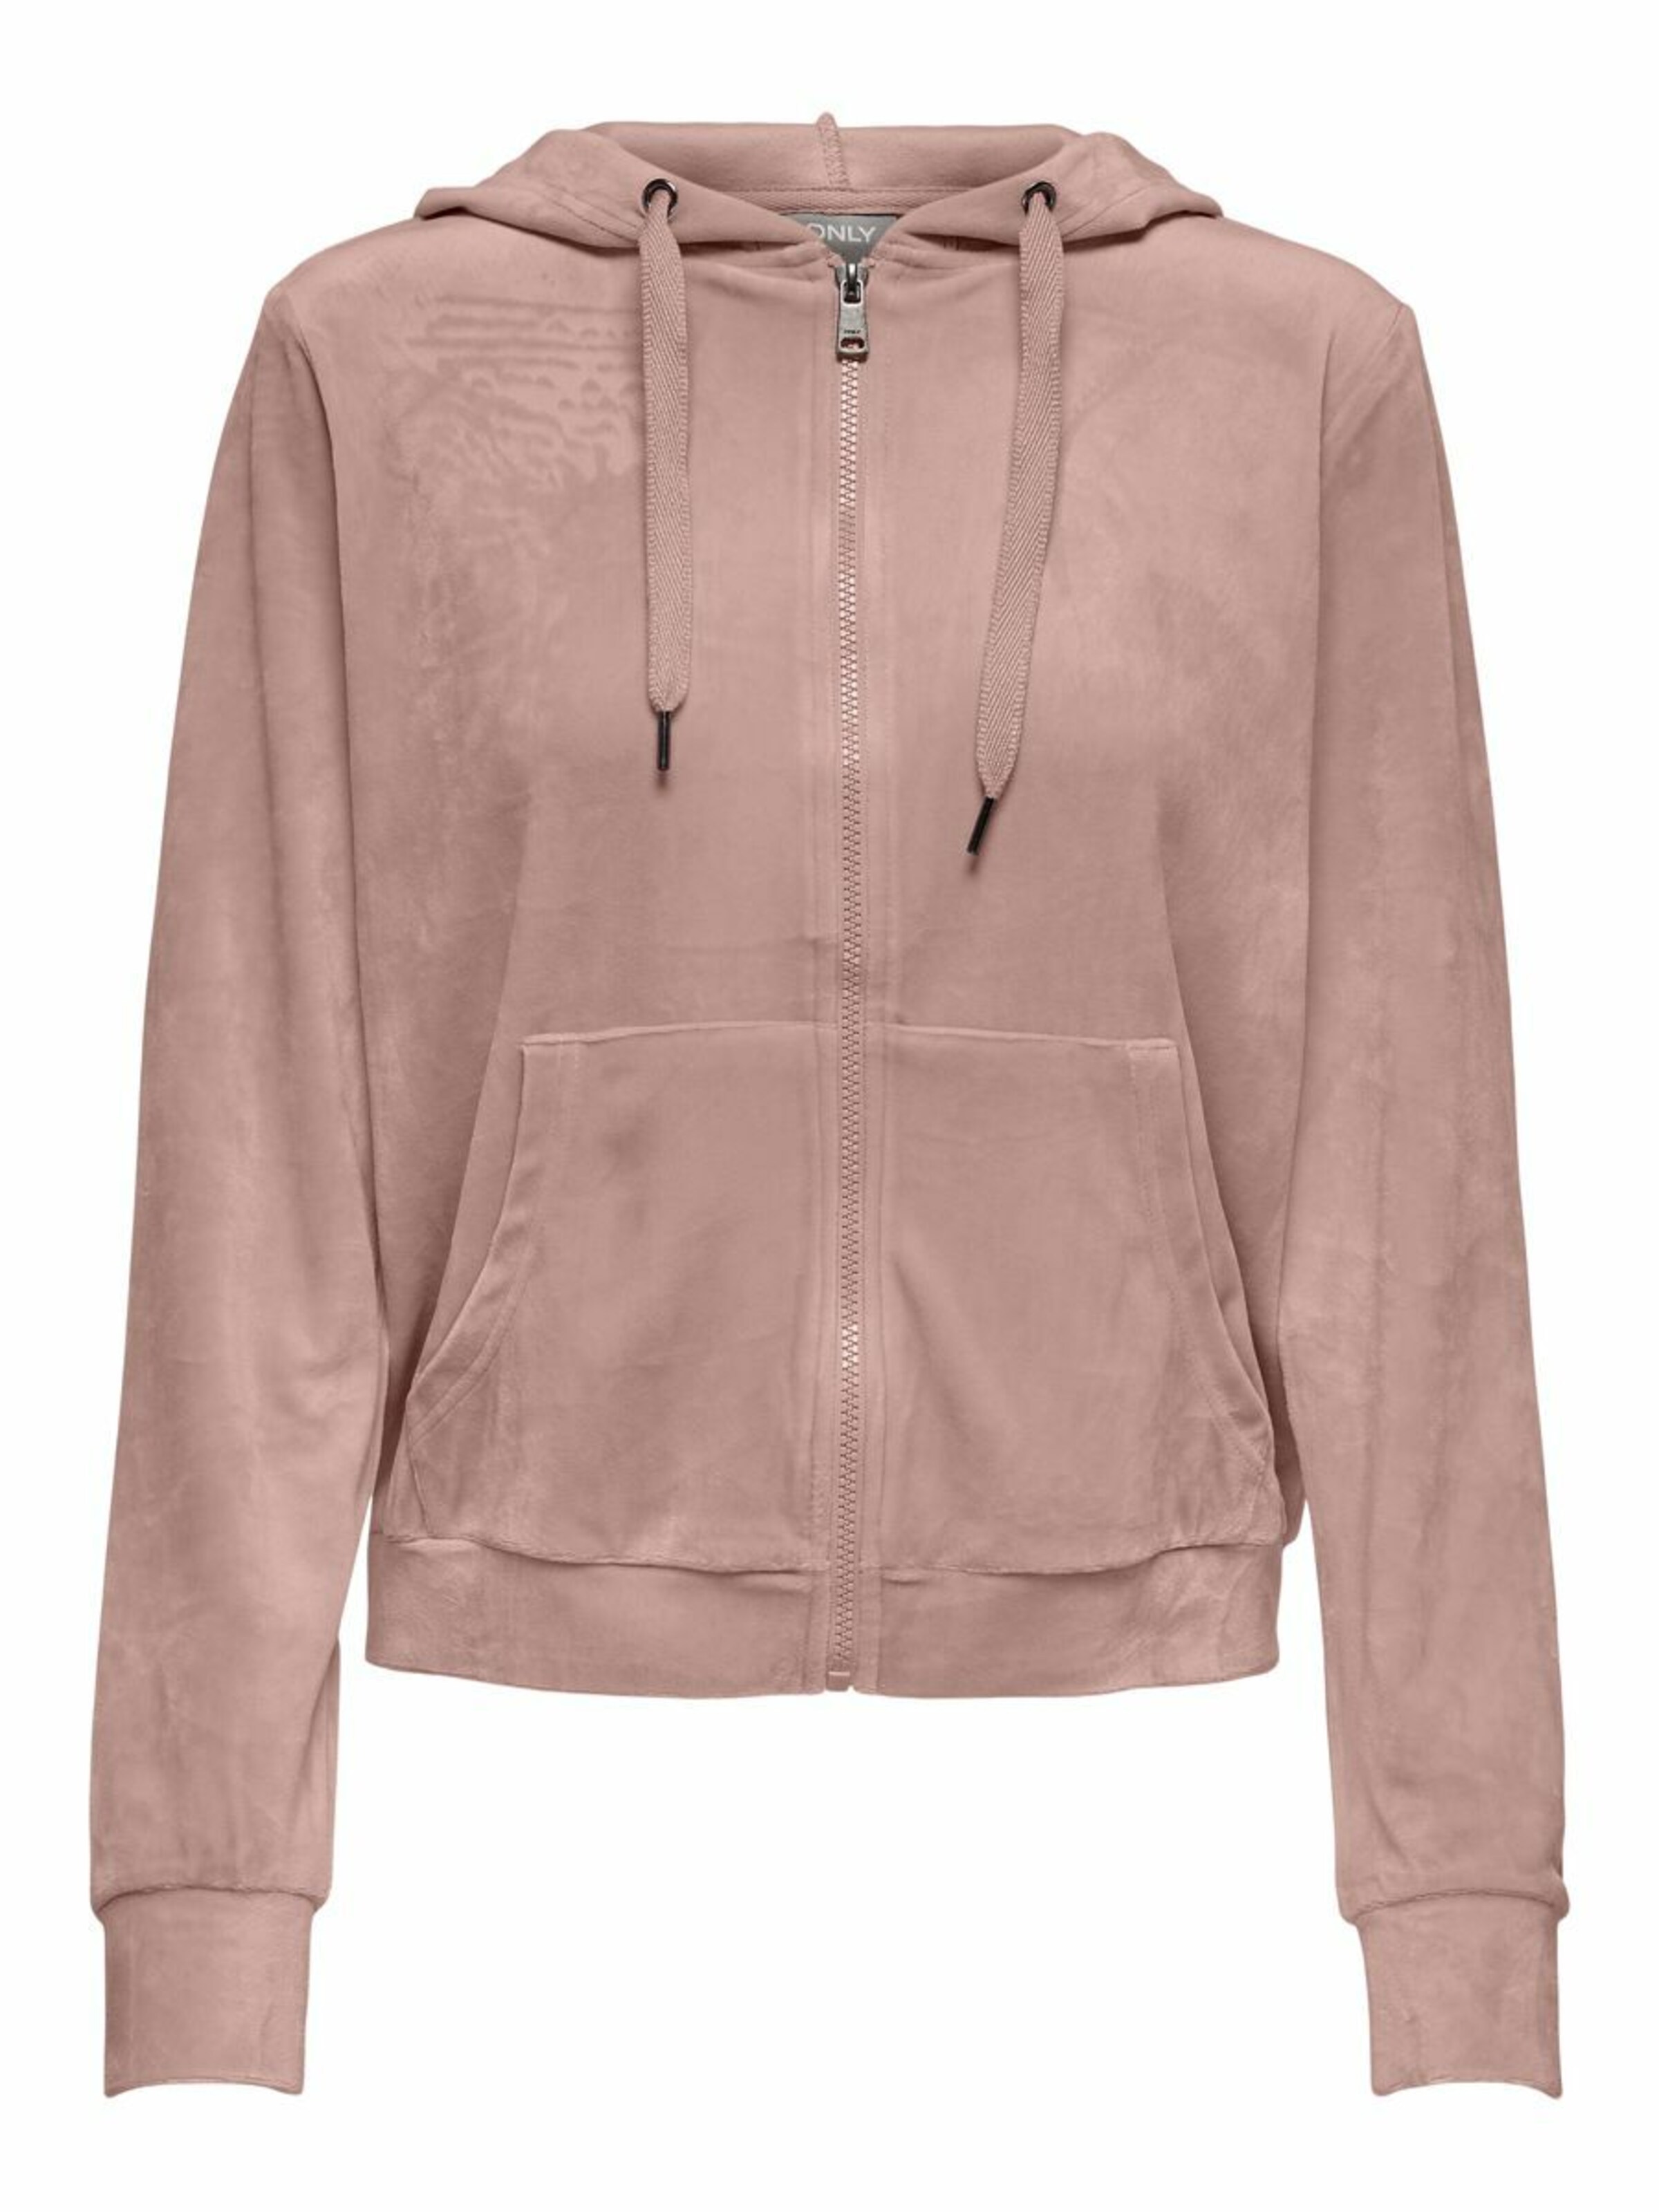 XL ONLY Damen Pullover Hoodie Sweat-Jacke OnlMarbella mit Zipper und Kapuze XS 